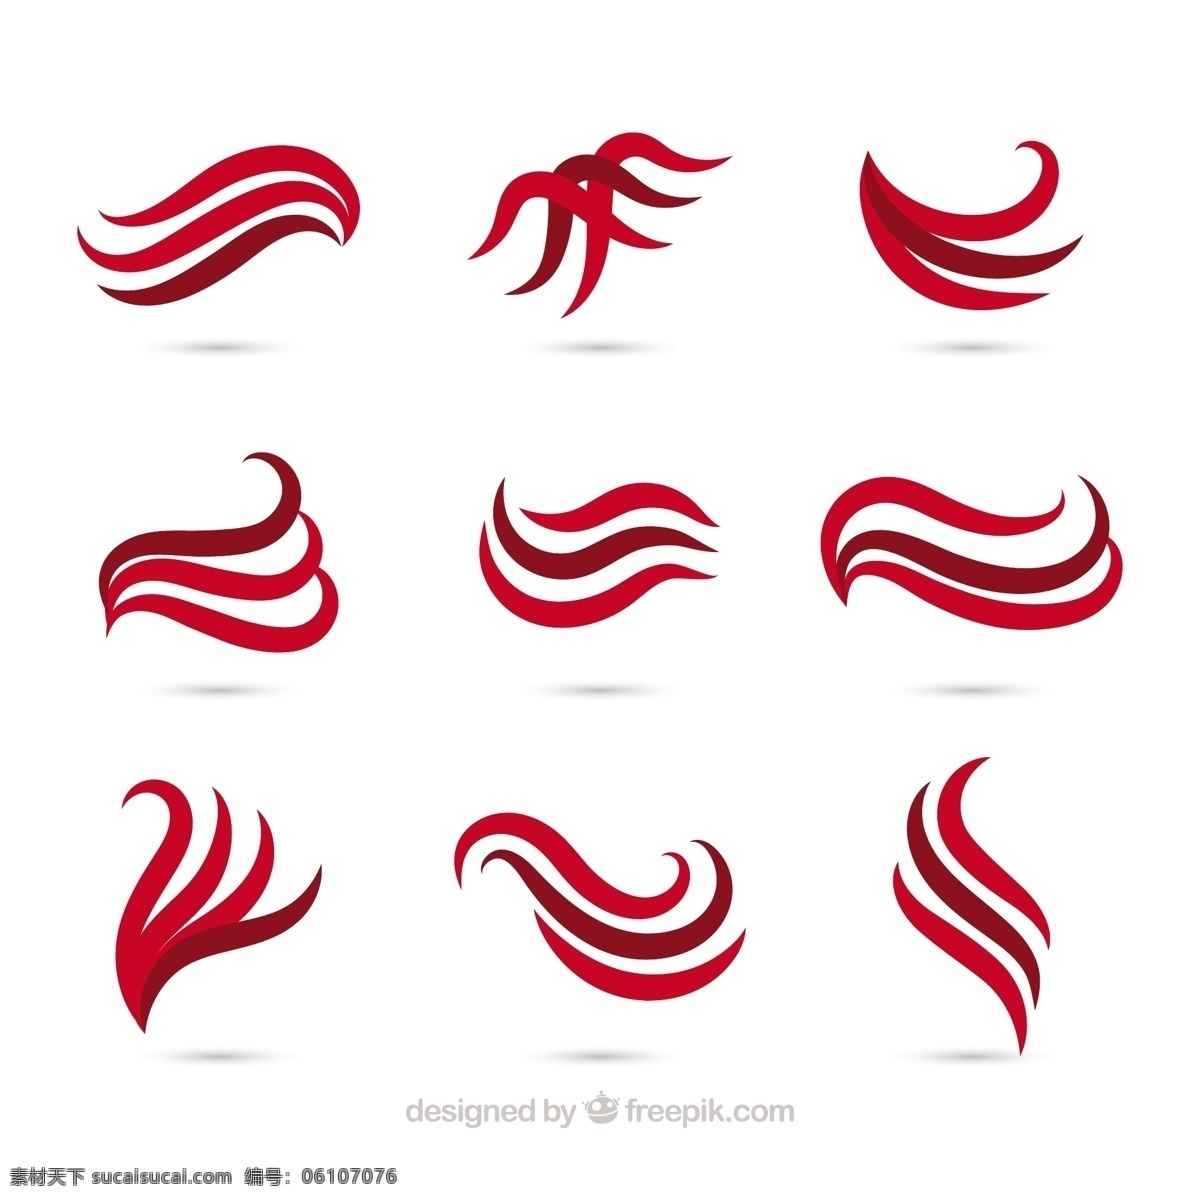 红色 音调 抽象 波 集合 标志 商业 线条 颜色 波浪 平面 企业 公司 抽象标志 企业形象 品牌 抽象线条 现代 平面设计 符号 身份